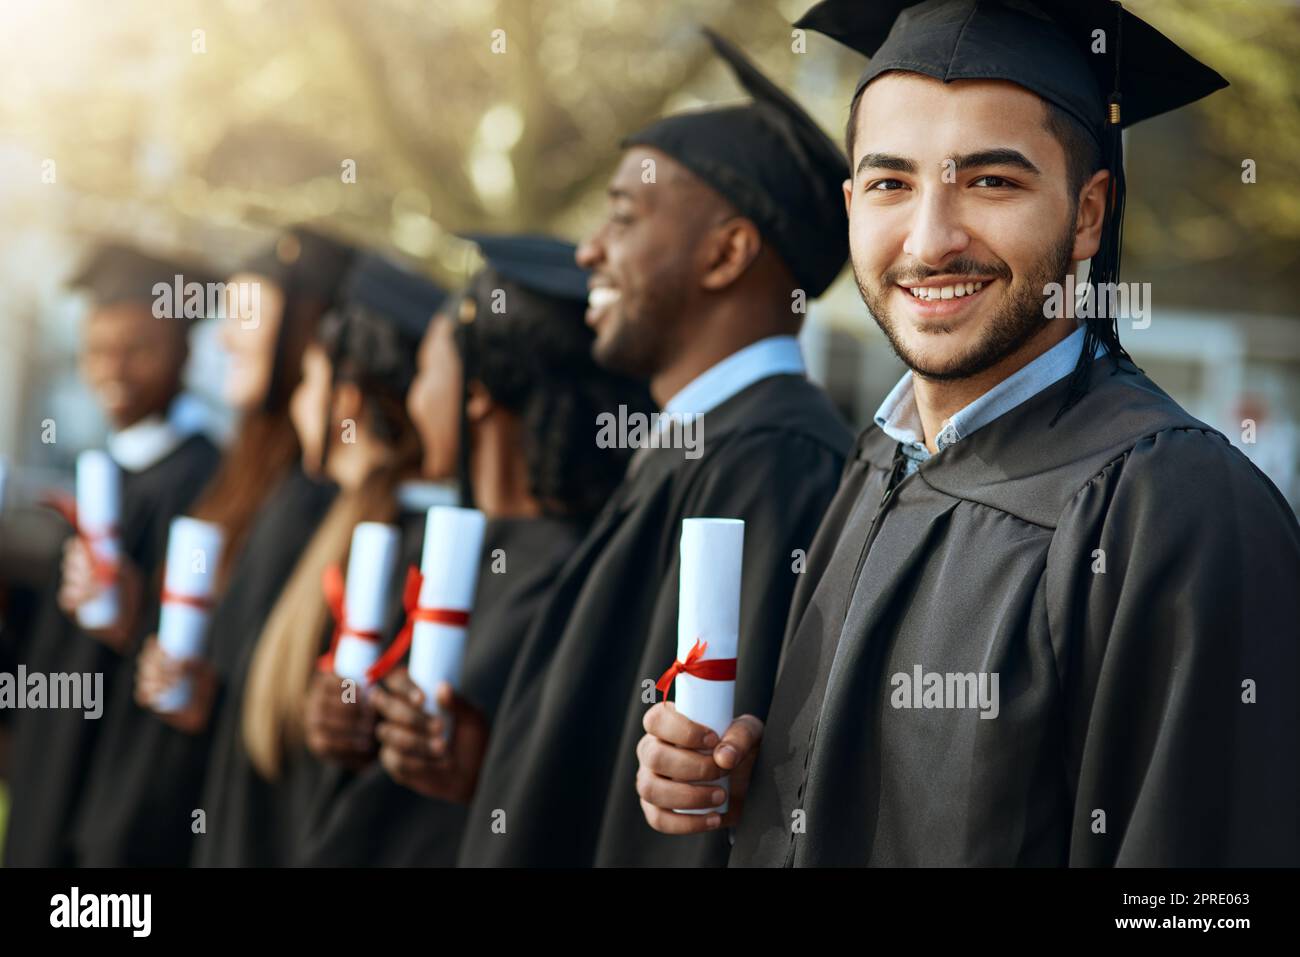 Fier ne commence pas à décrire le sentiment. Portrait d'un jeune homme titulaire de son diplôme en se tenant debout avec ses camarades le jour de la remise des diplômes. Banque D'Images